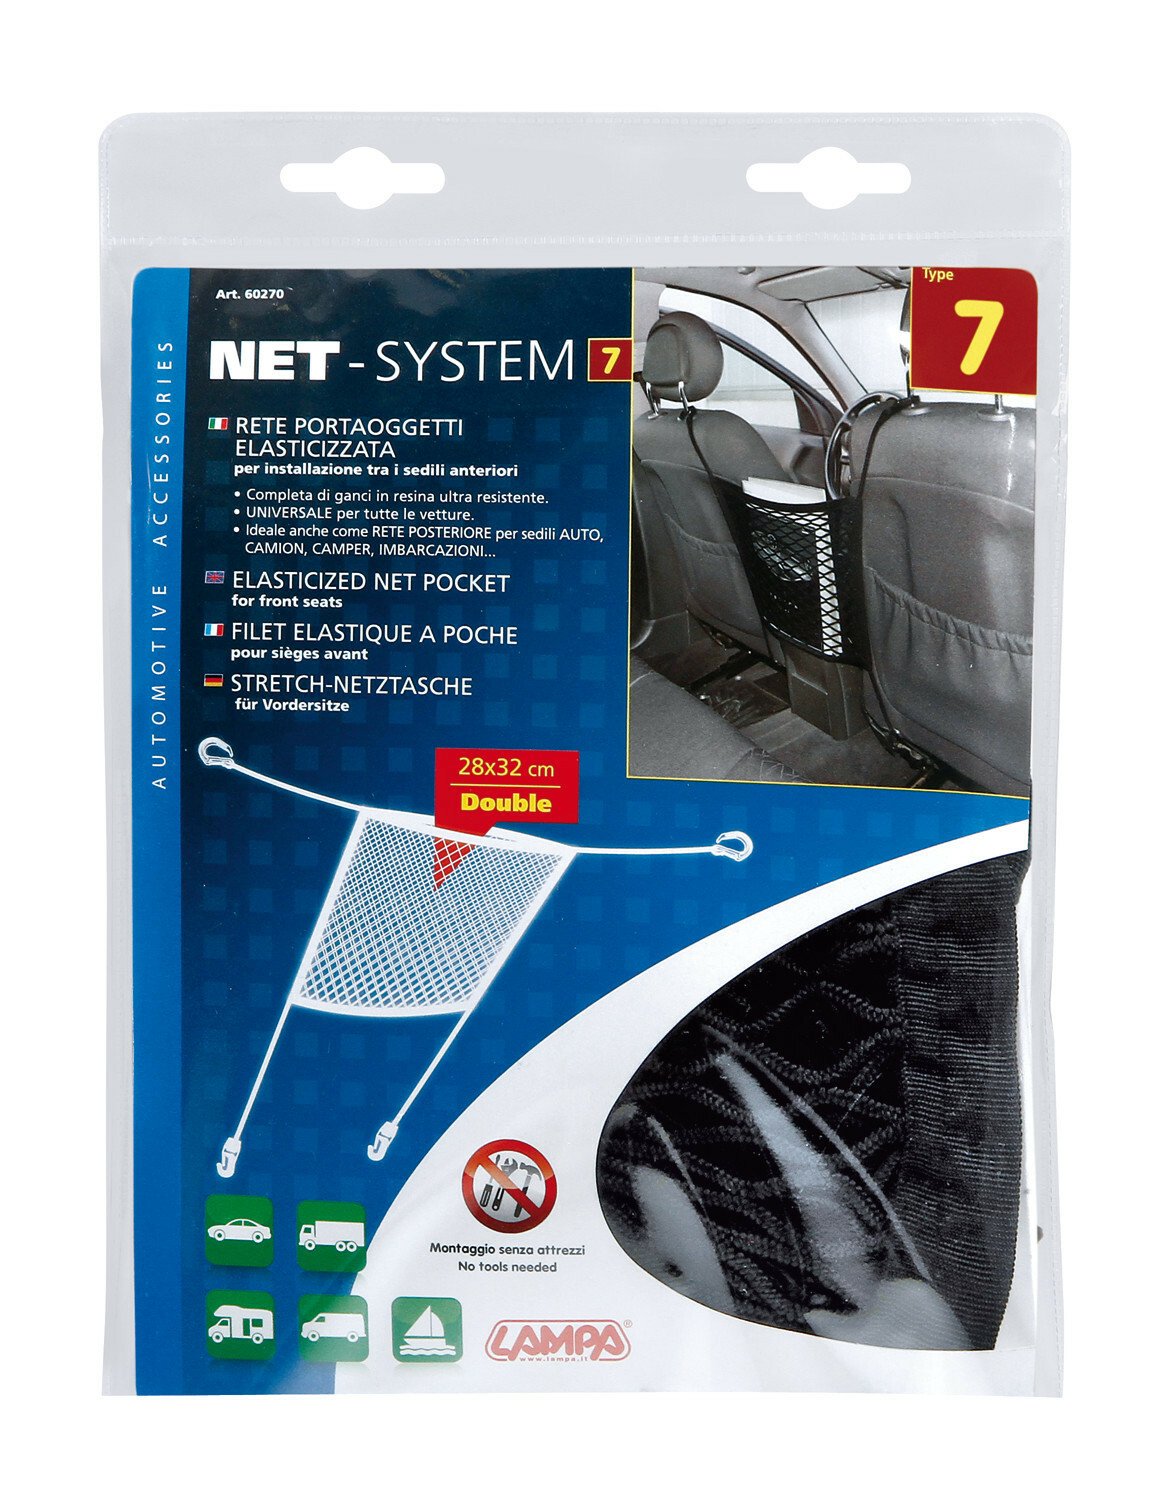 Net-System-7, elasticized net pocket - 28x32cm thumb